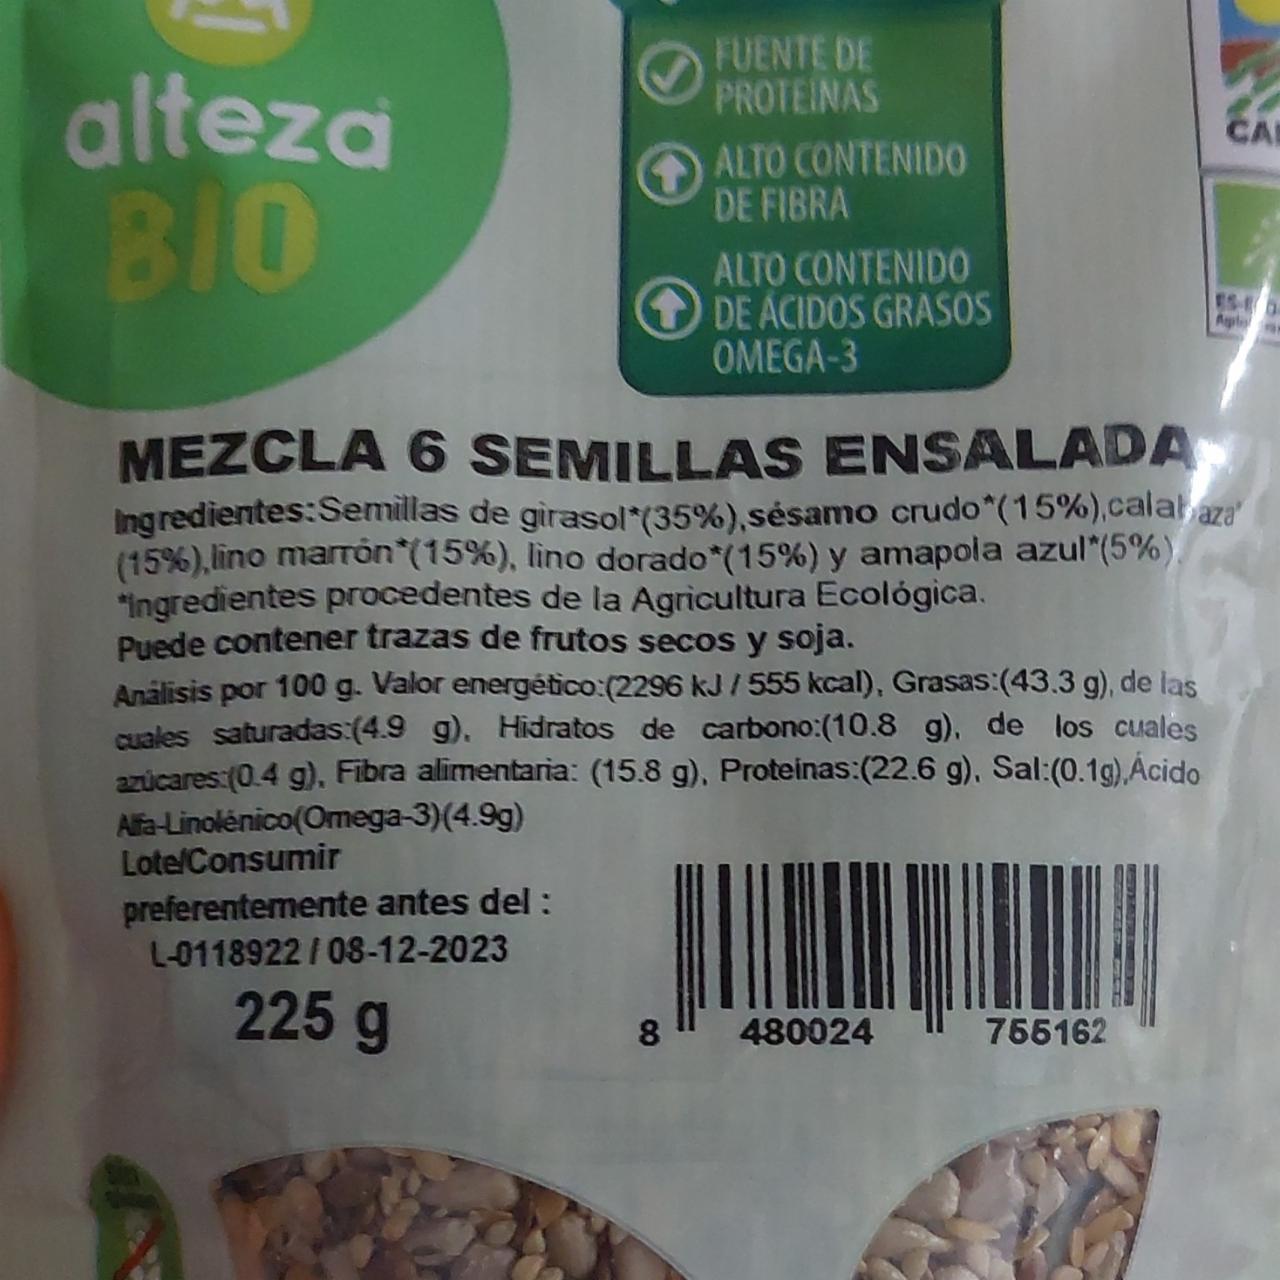 Fotografie - Mezcla 6 semillas ensalada Alteza